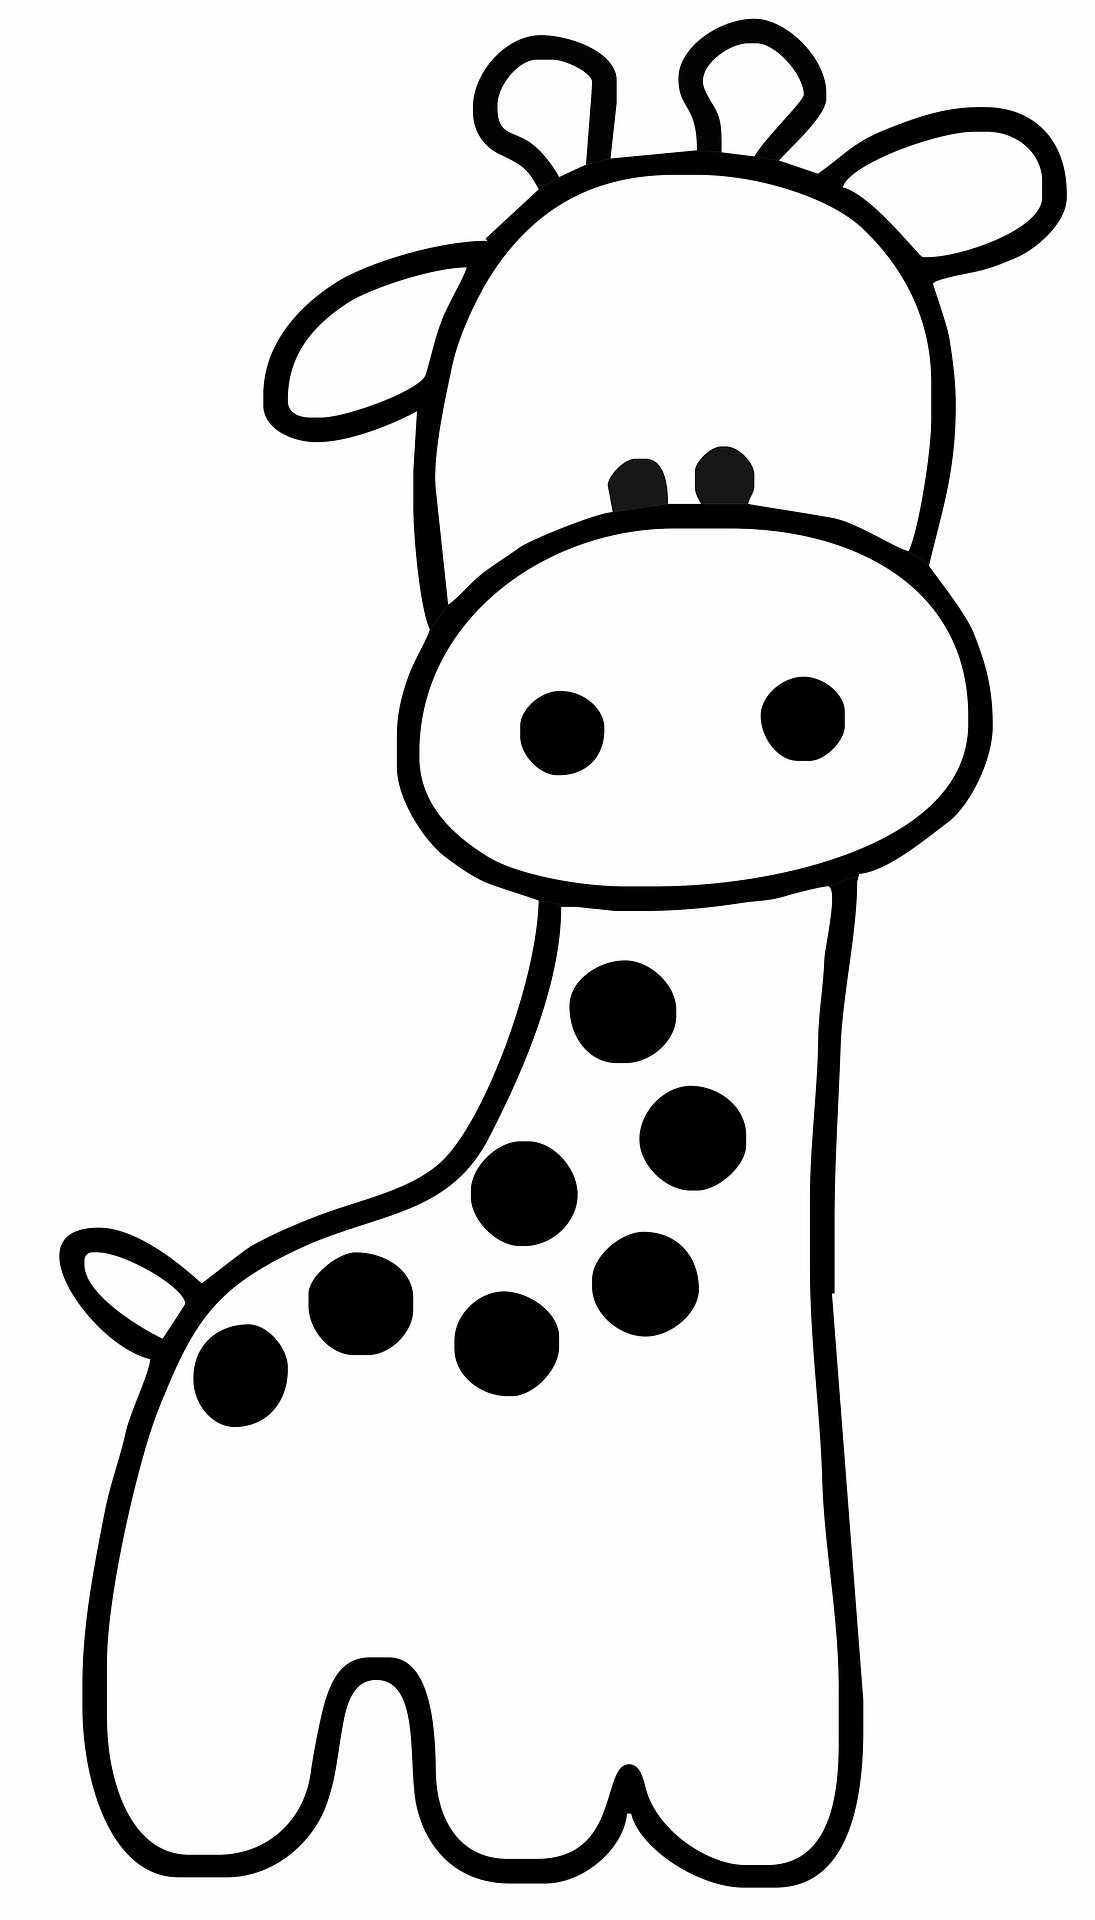 Disegno da colorare di giraffa semplice per bambini